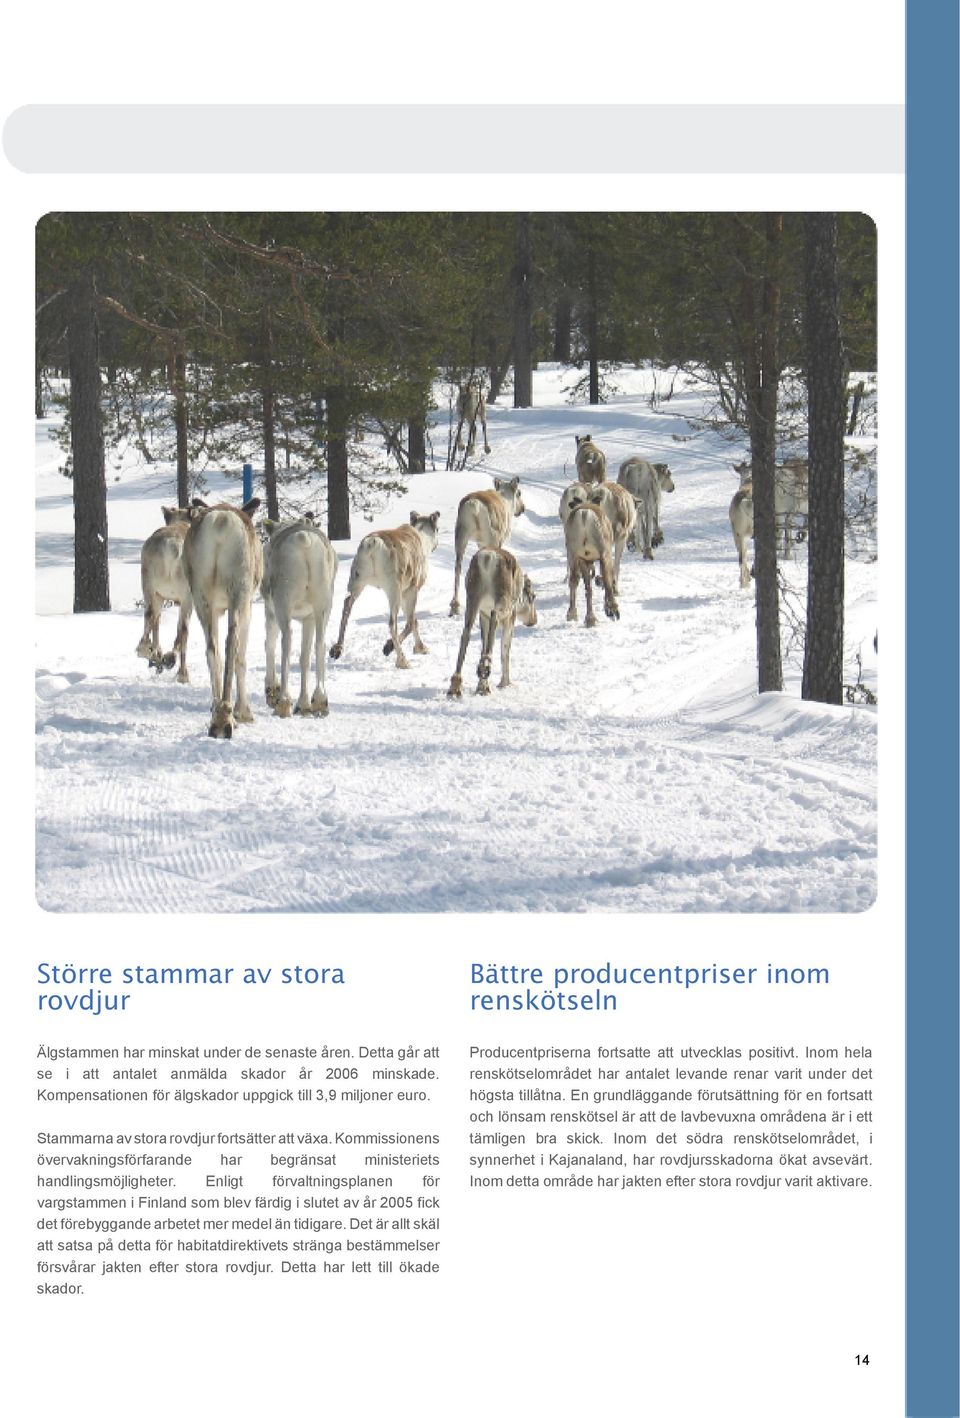 Enligt förvaltningsplanen för vargstammen i Finland som blev färdig i slutet av år 2005 fick det förebyggande arbetet mer medel än tidigare.